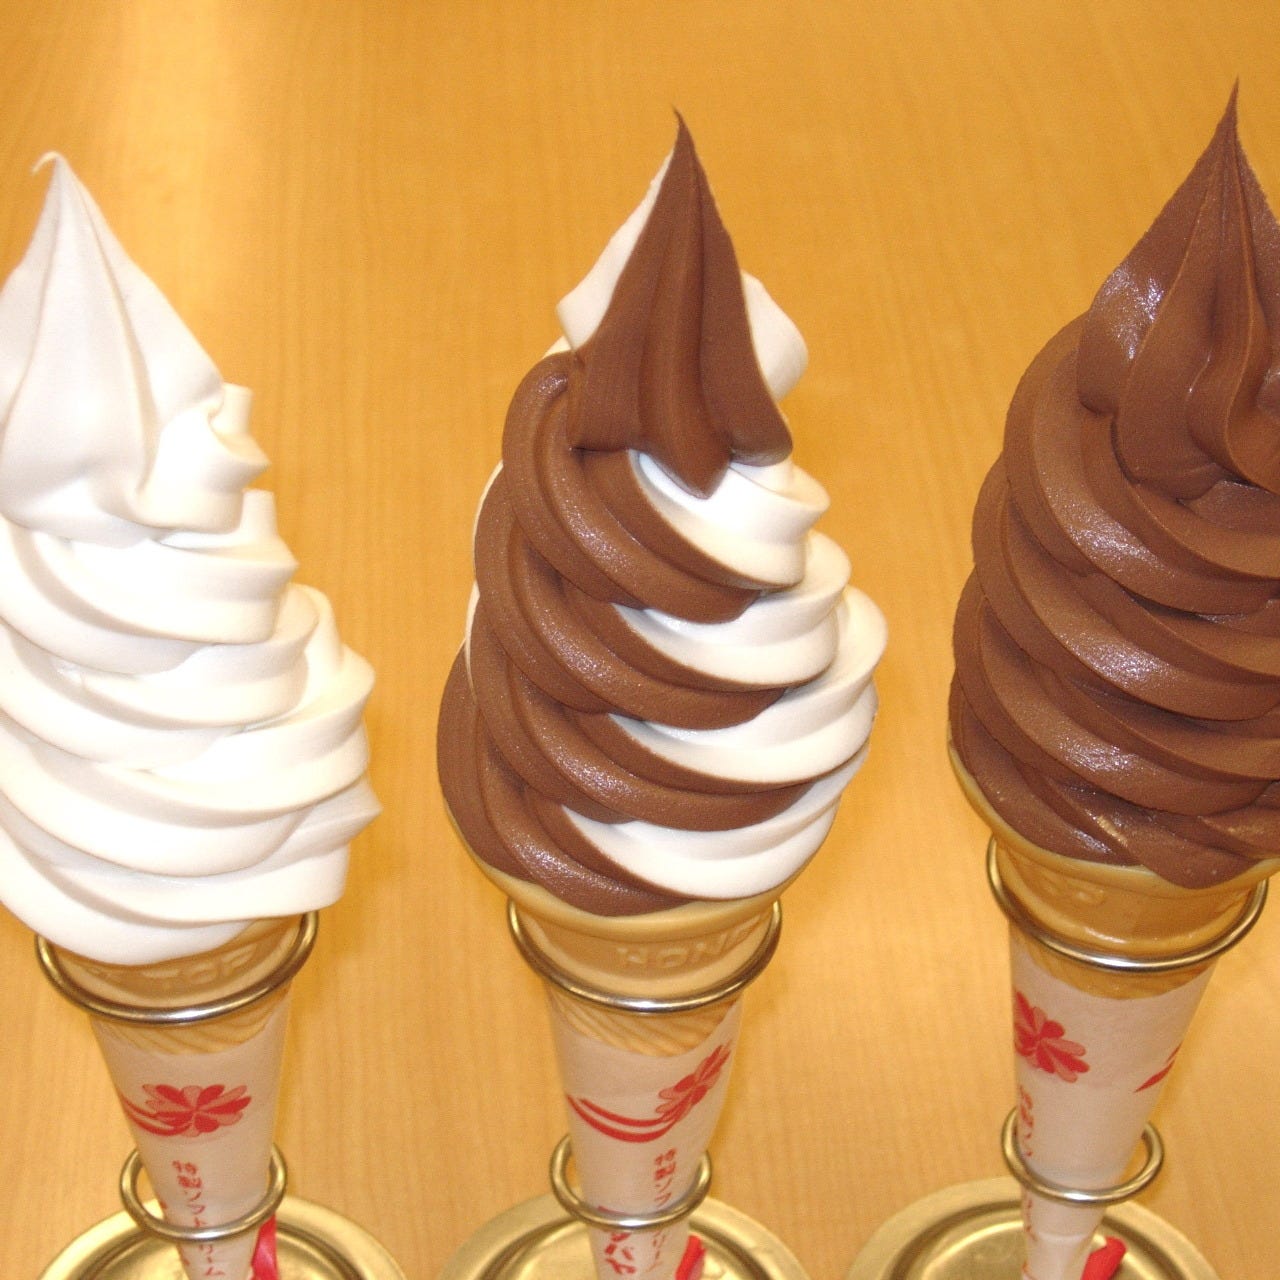 ソフトクリームが3種類並んでいる